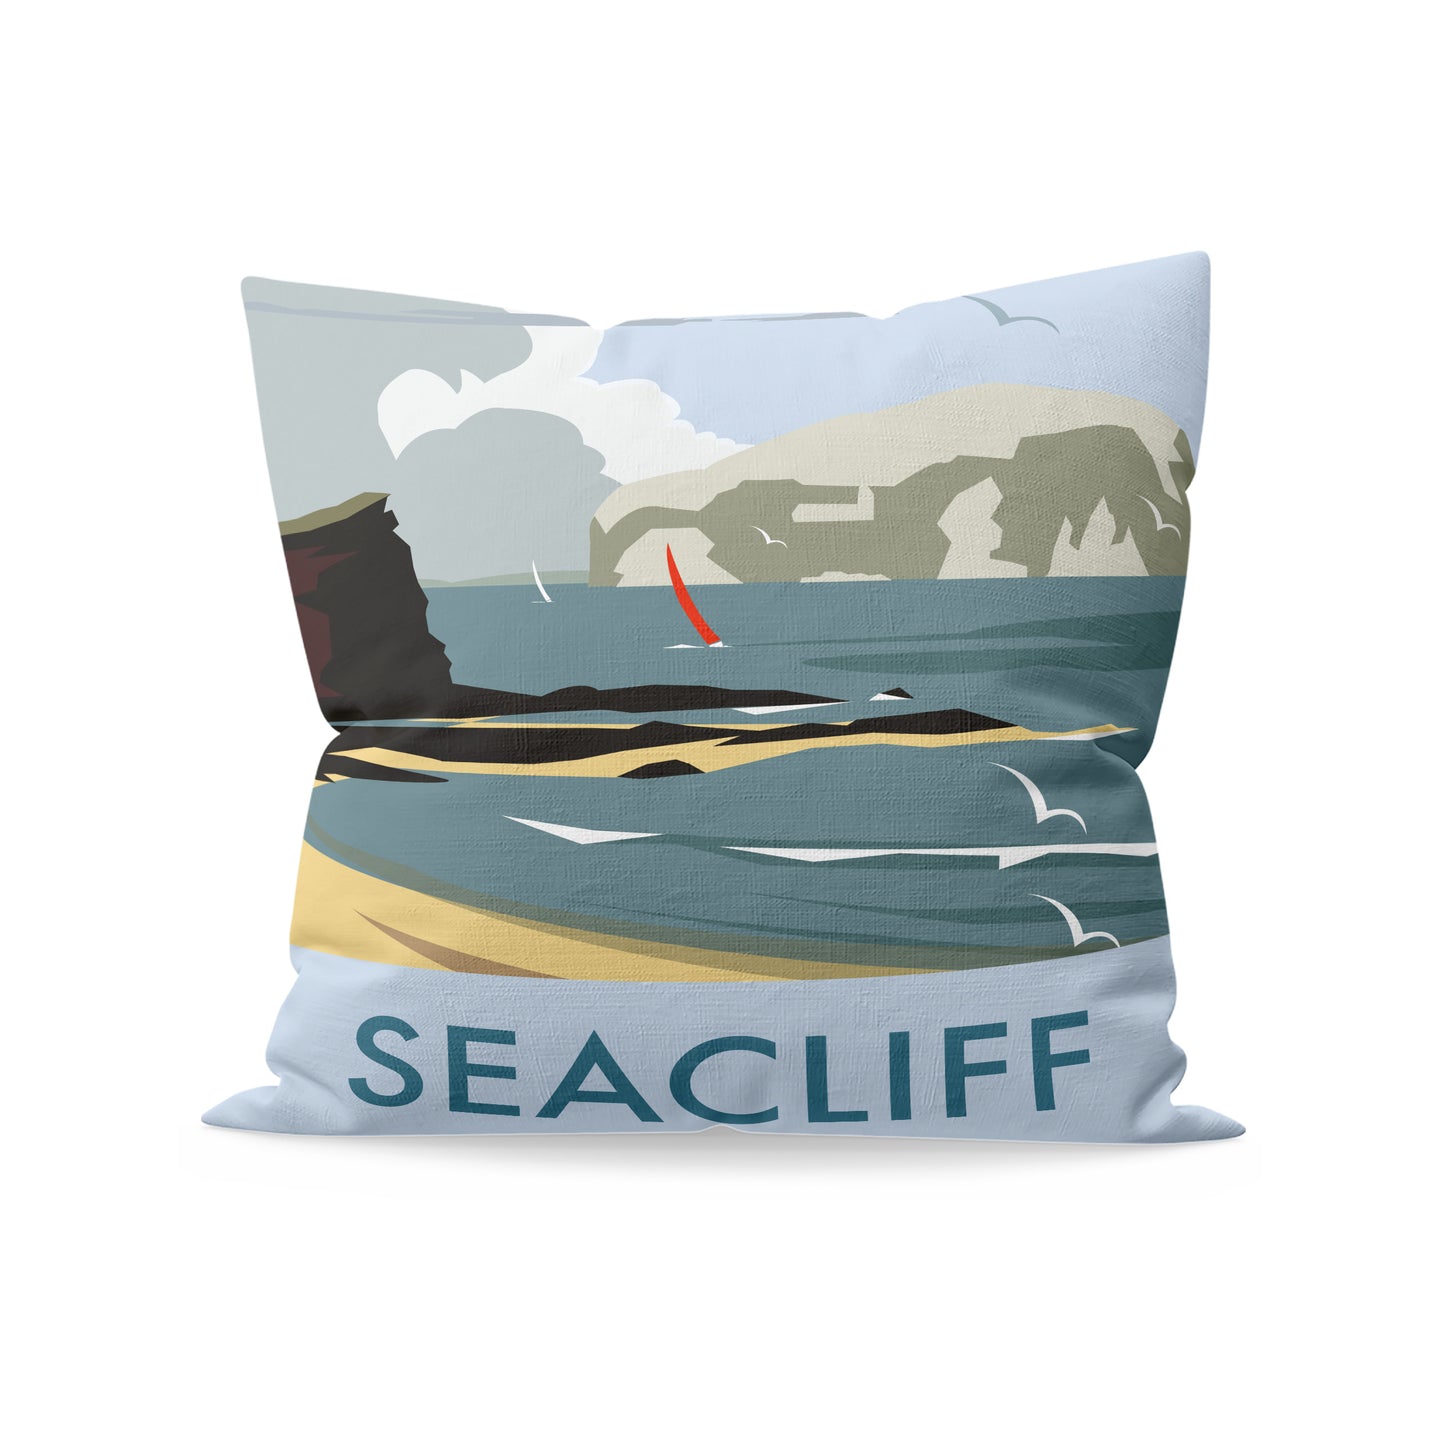 Seacliff Cushion